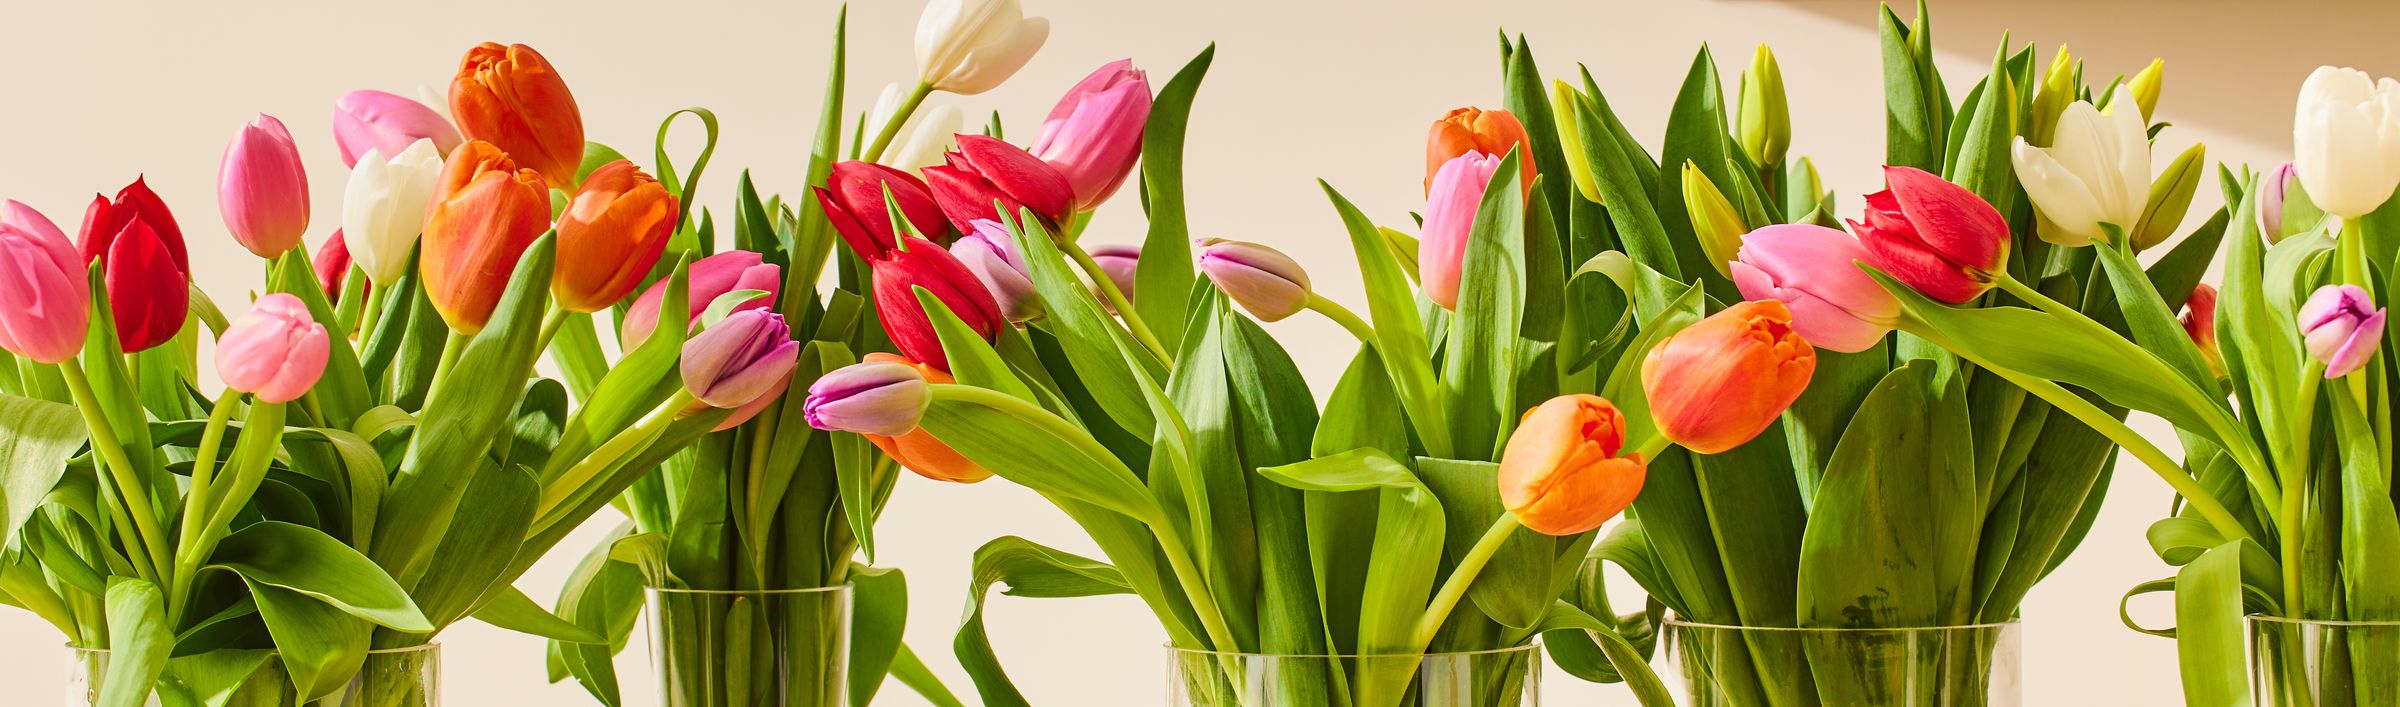 Bilde av tulipaner i vaser.